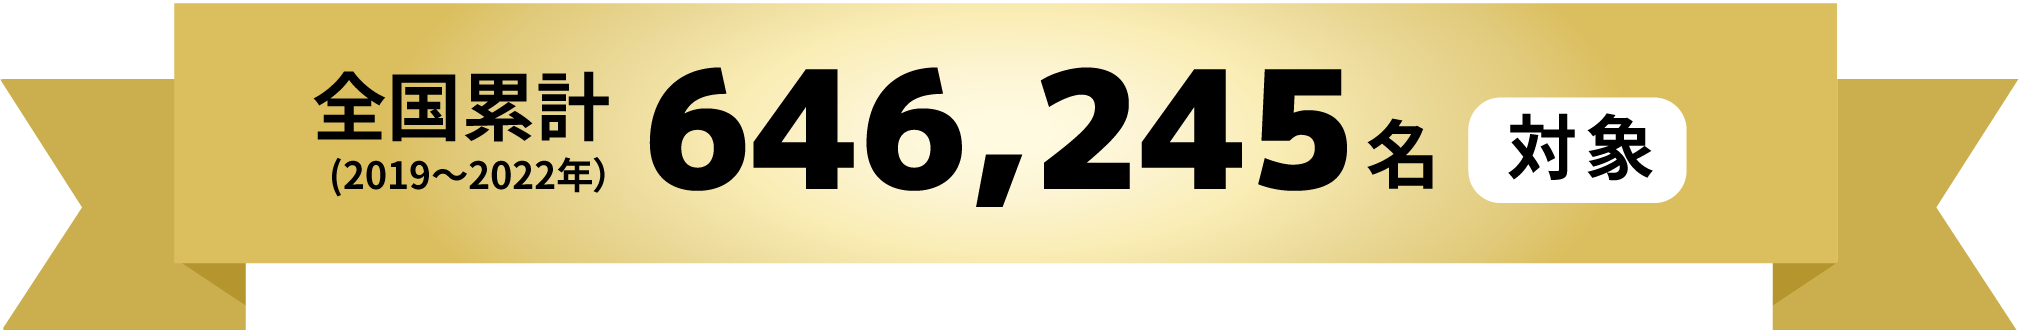 全国累計 646,245人対象（2019 ~ 2022年）